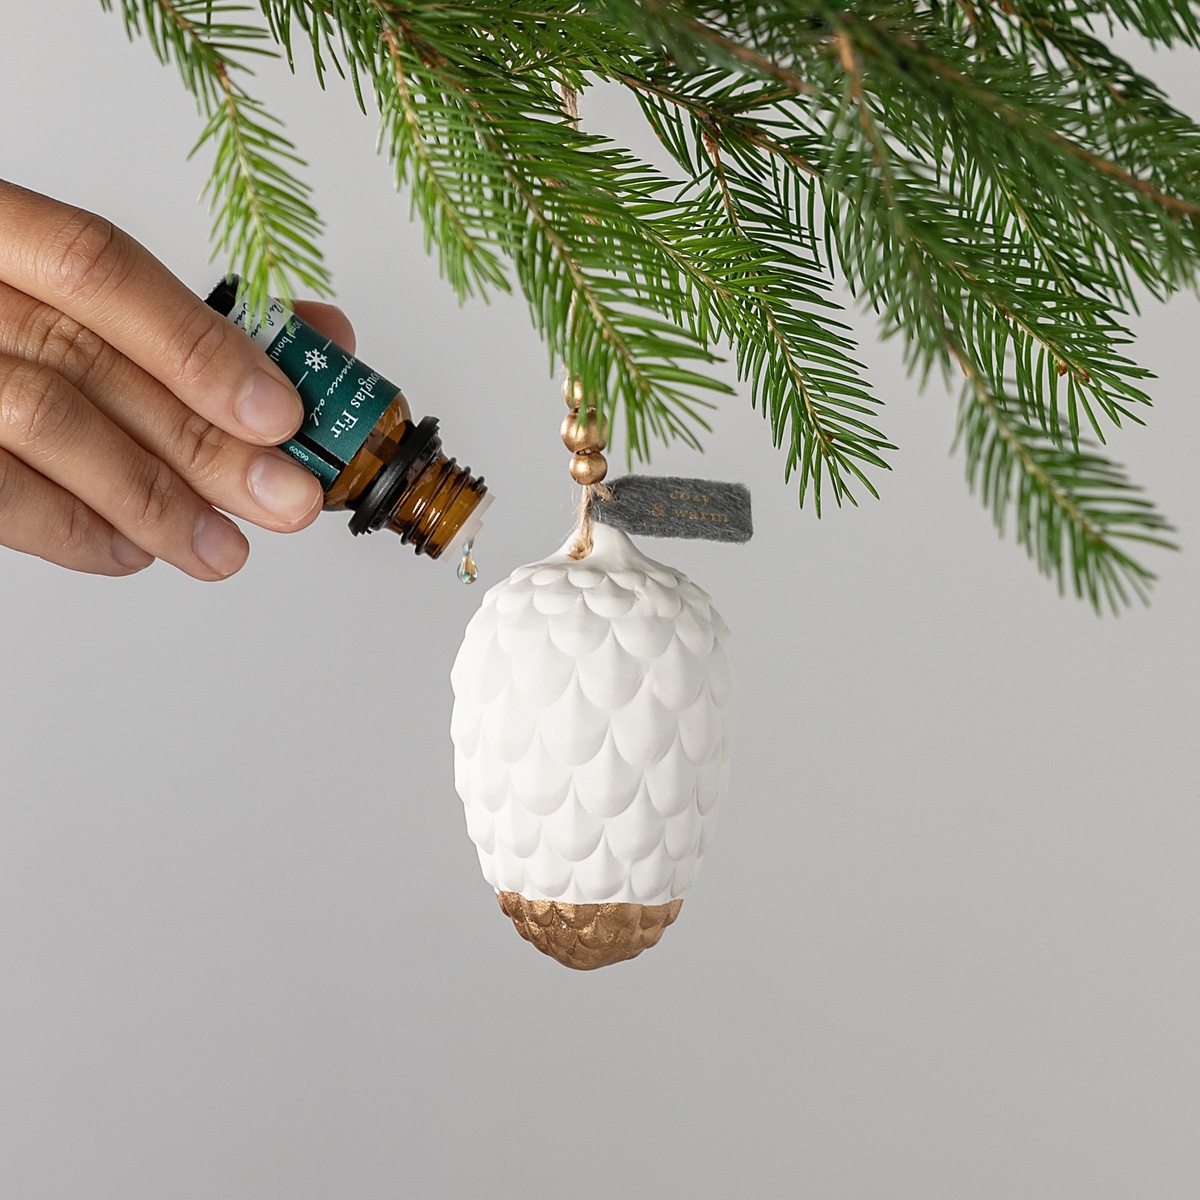 Pine Cone Fragrance Oil Diffuser Ornament